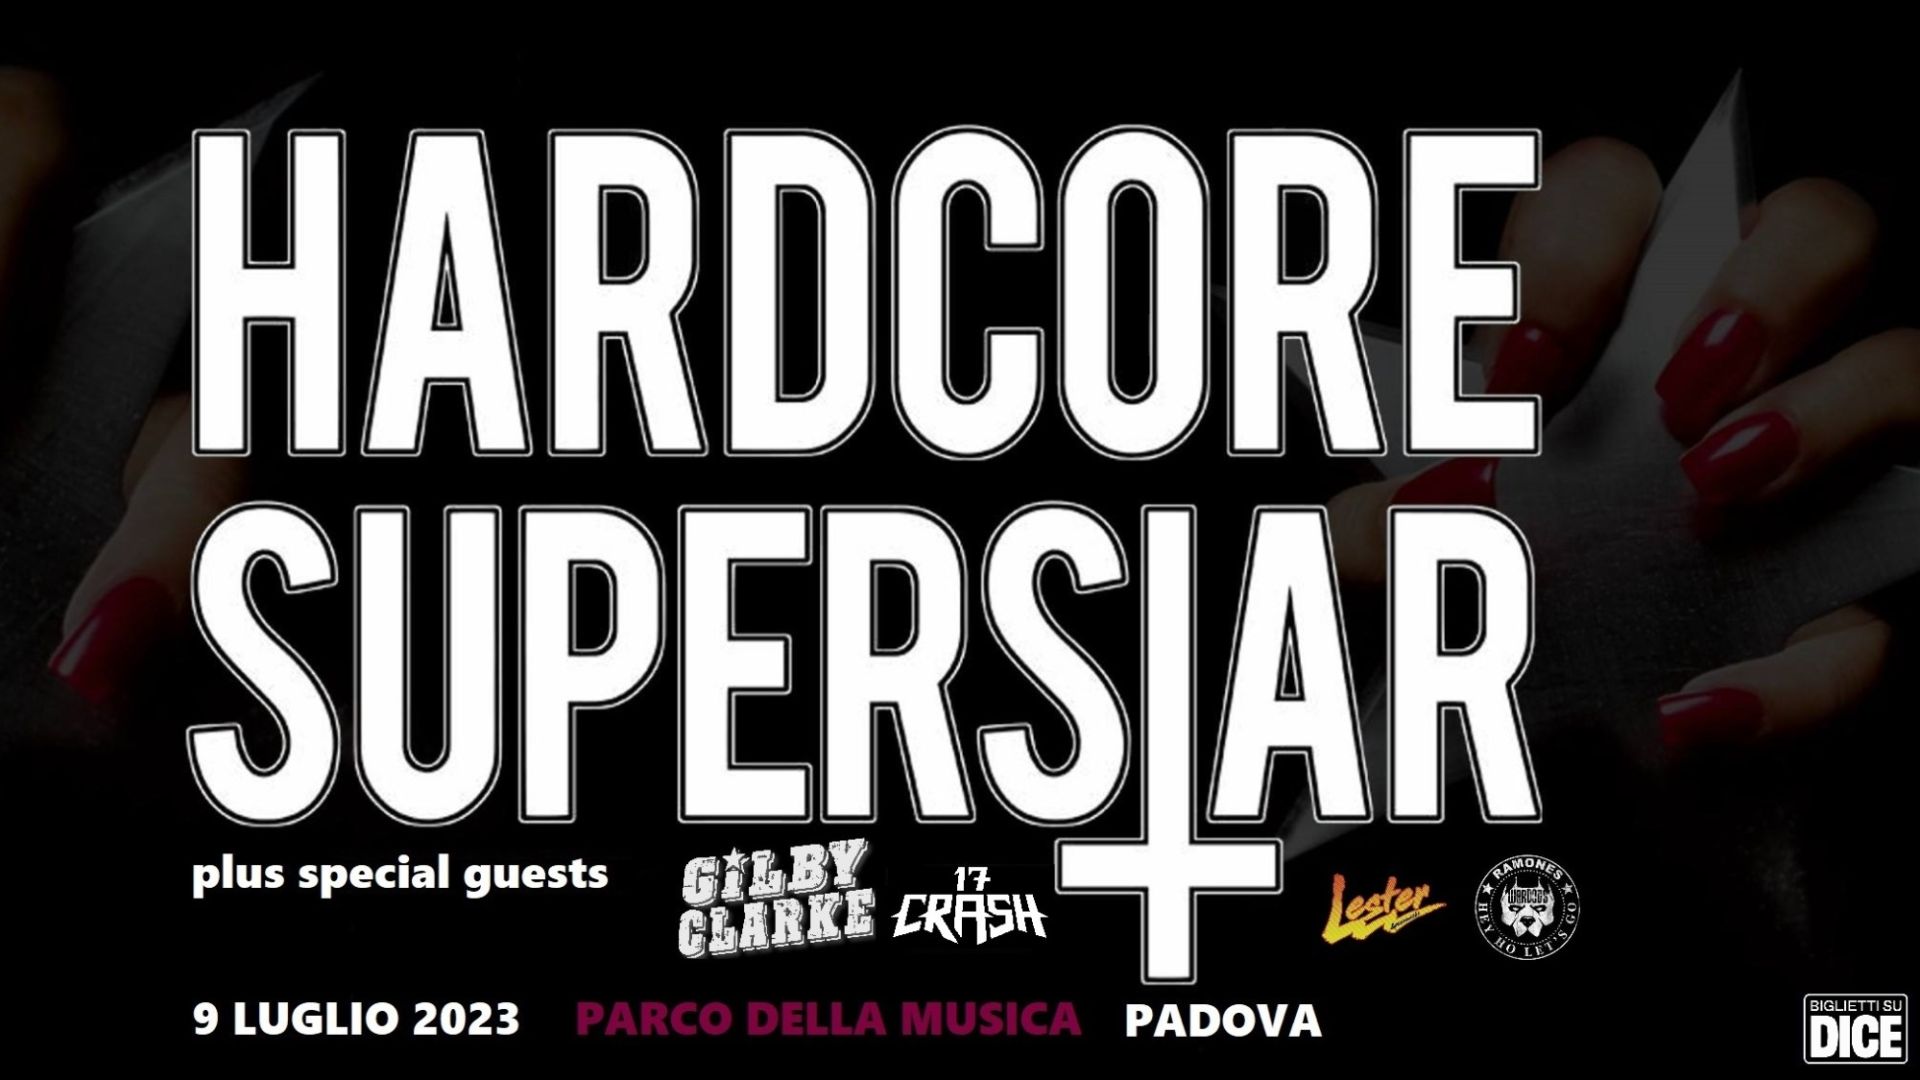 Hardcore Superstar + Gilby Clarke (ex Guns'n'roses) + 17Crash + guests